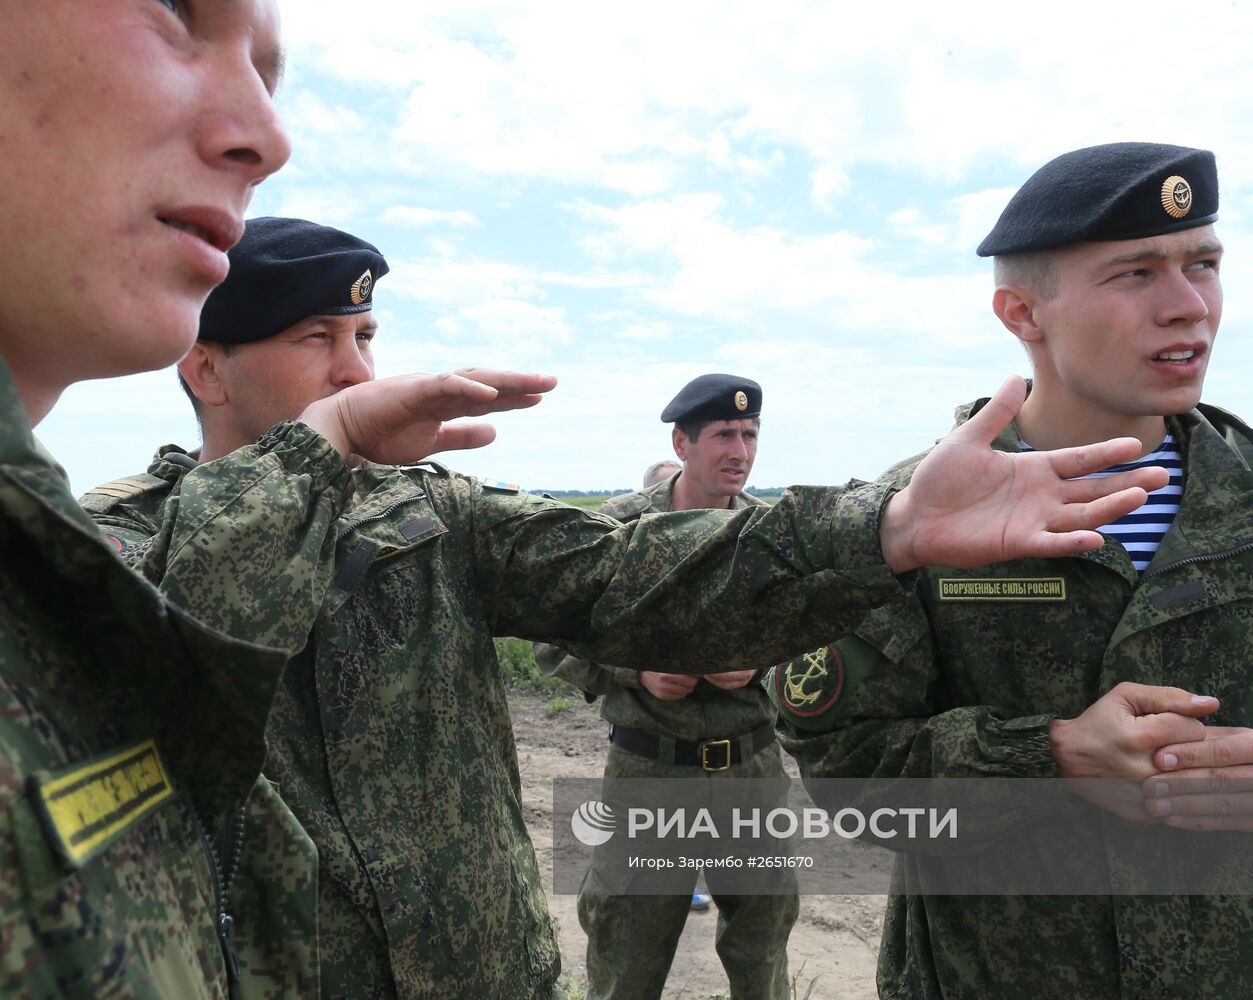 Этап конкурса морской пехоты береговых войск ВМФ "Балтийское дерби-2015"